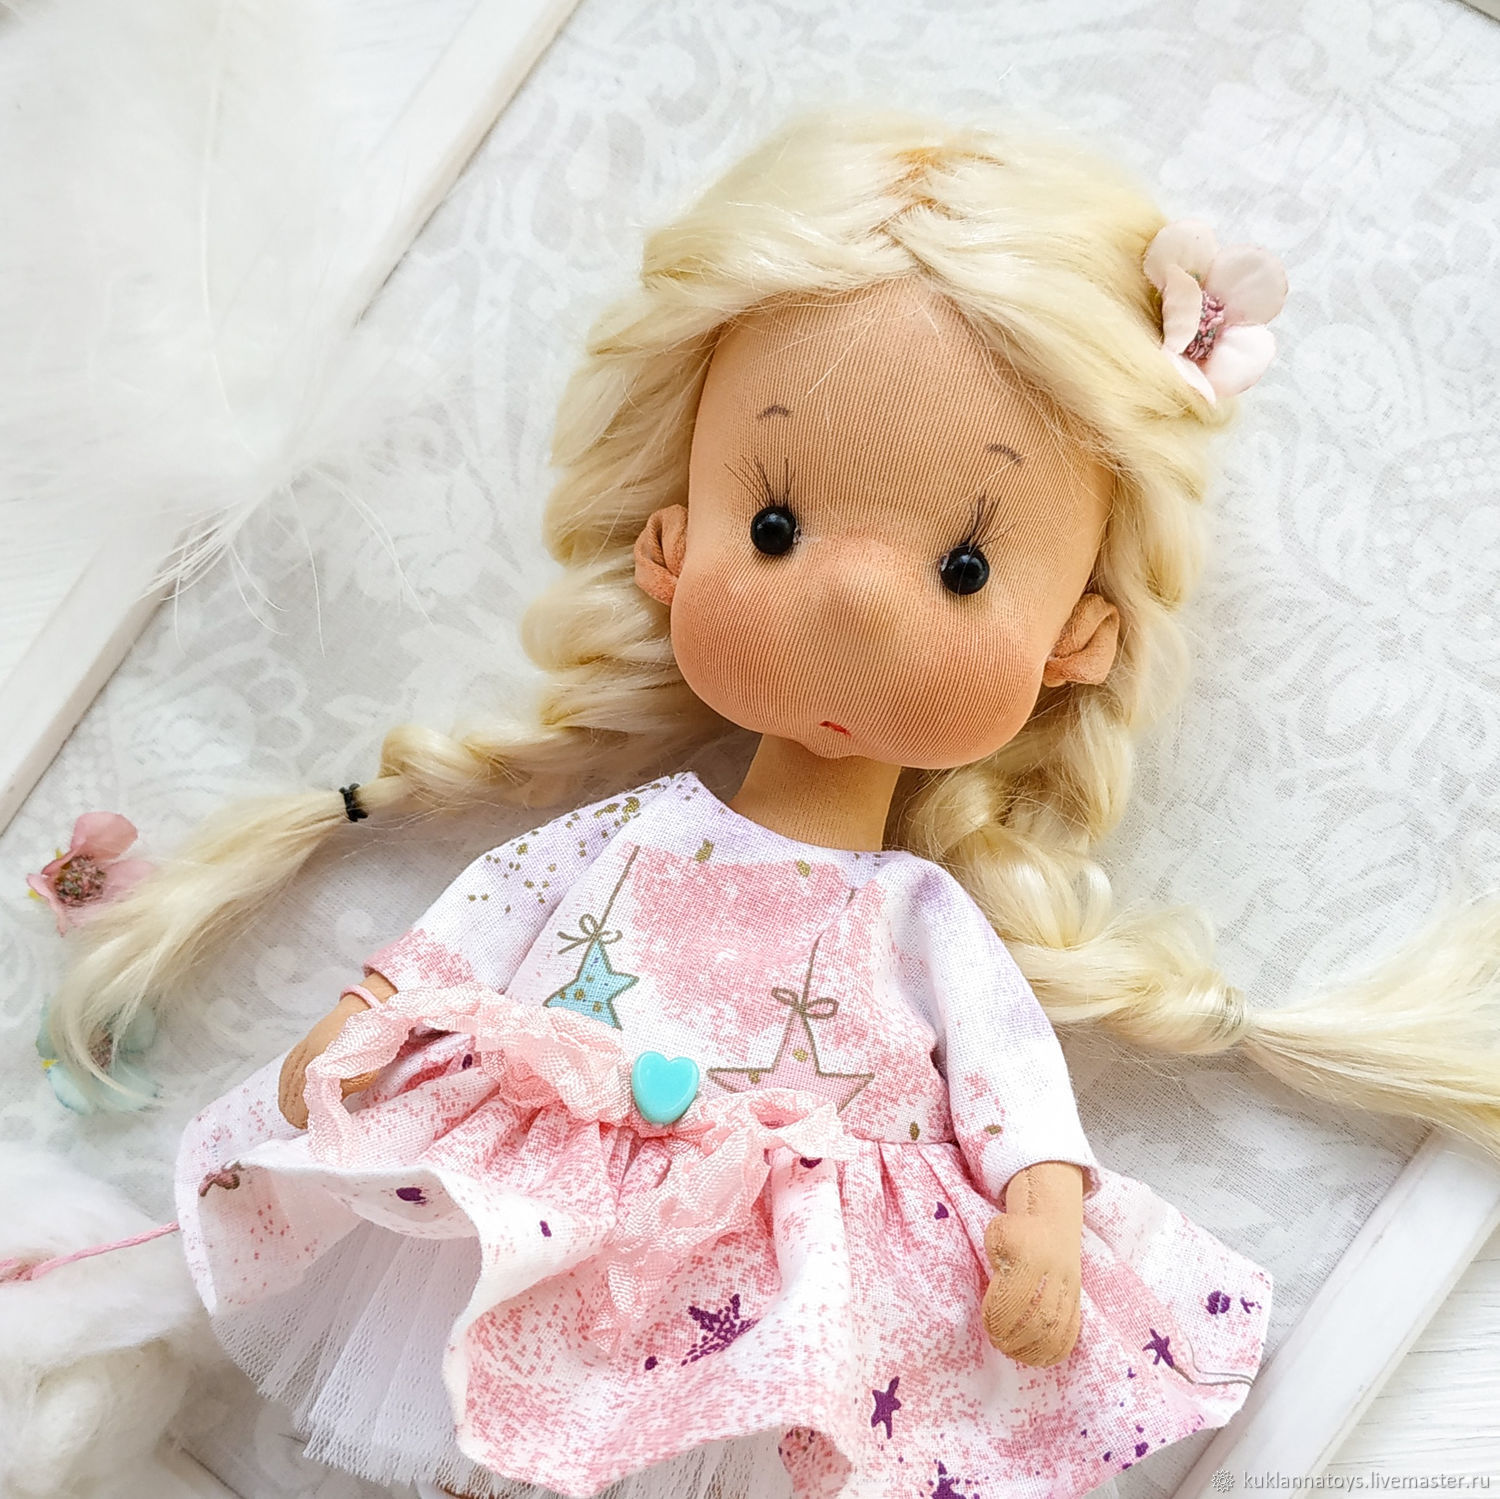 Текстильные куклы: какие они бывают и почему они такие милые